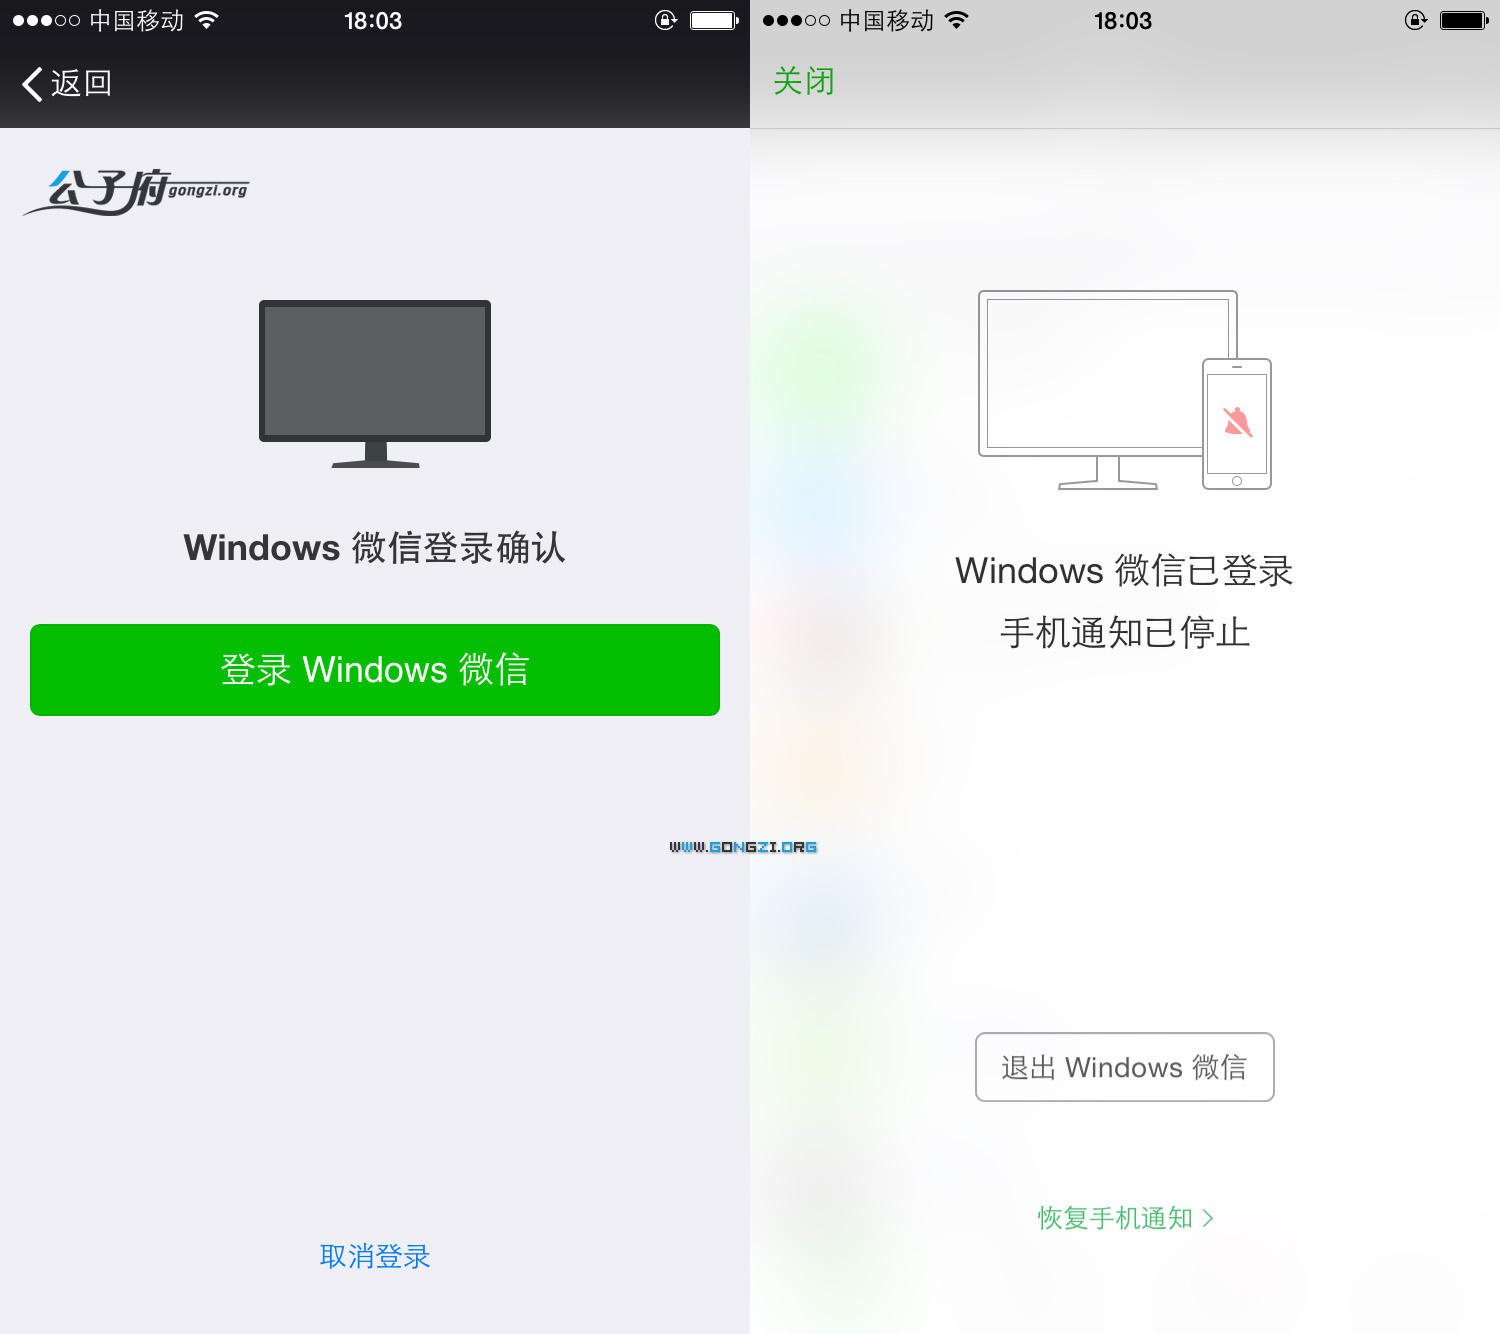 真正的电脑版微信 - WeChat For Windows 客户端版本更新至 v1.2